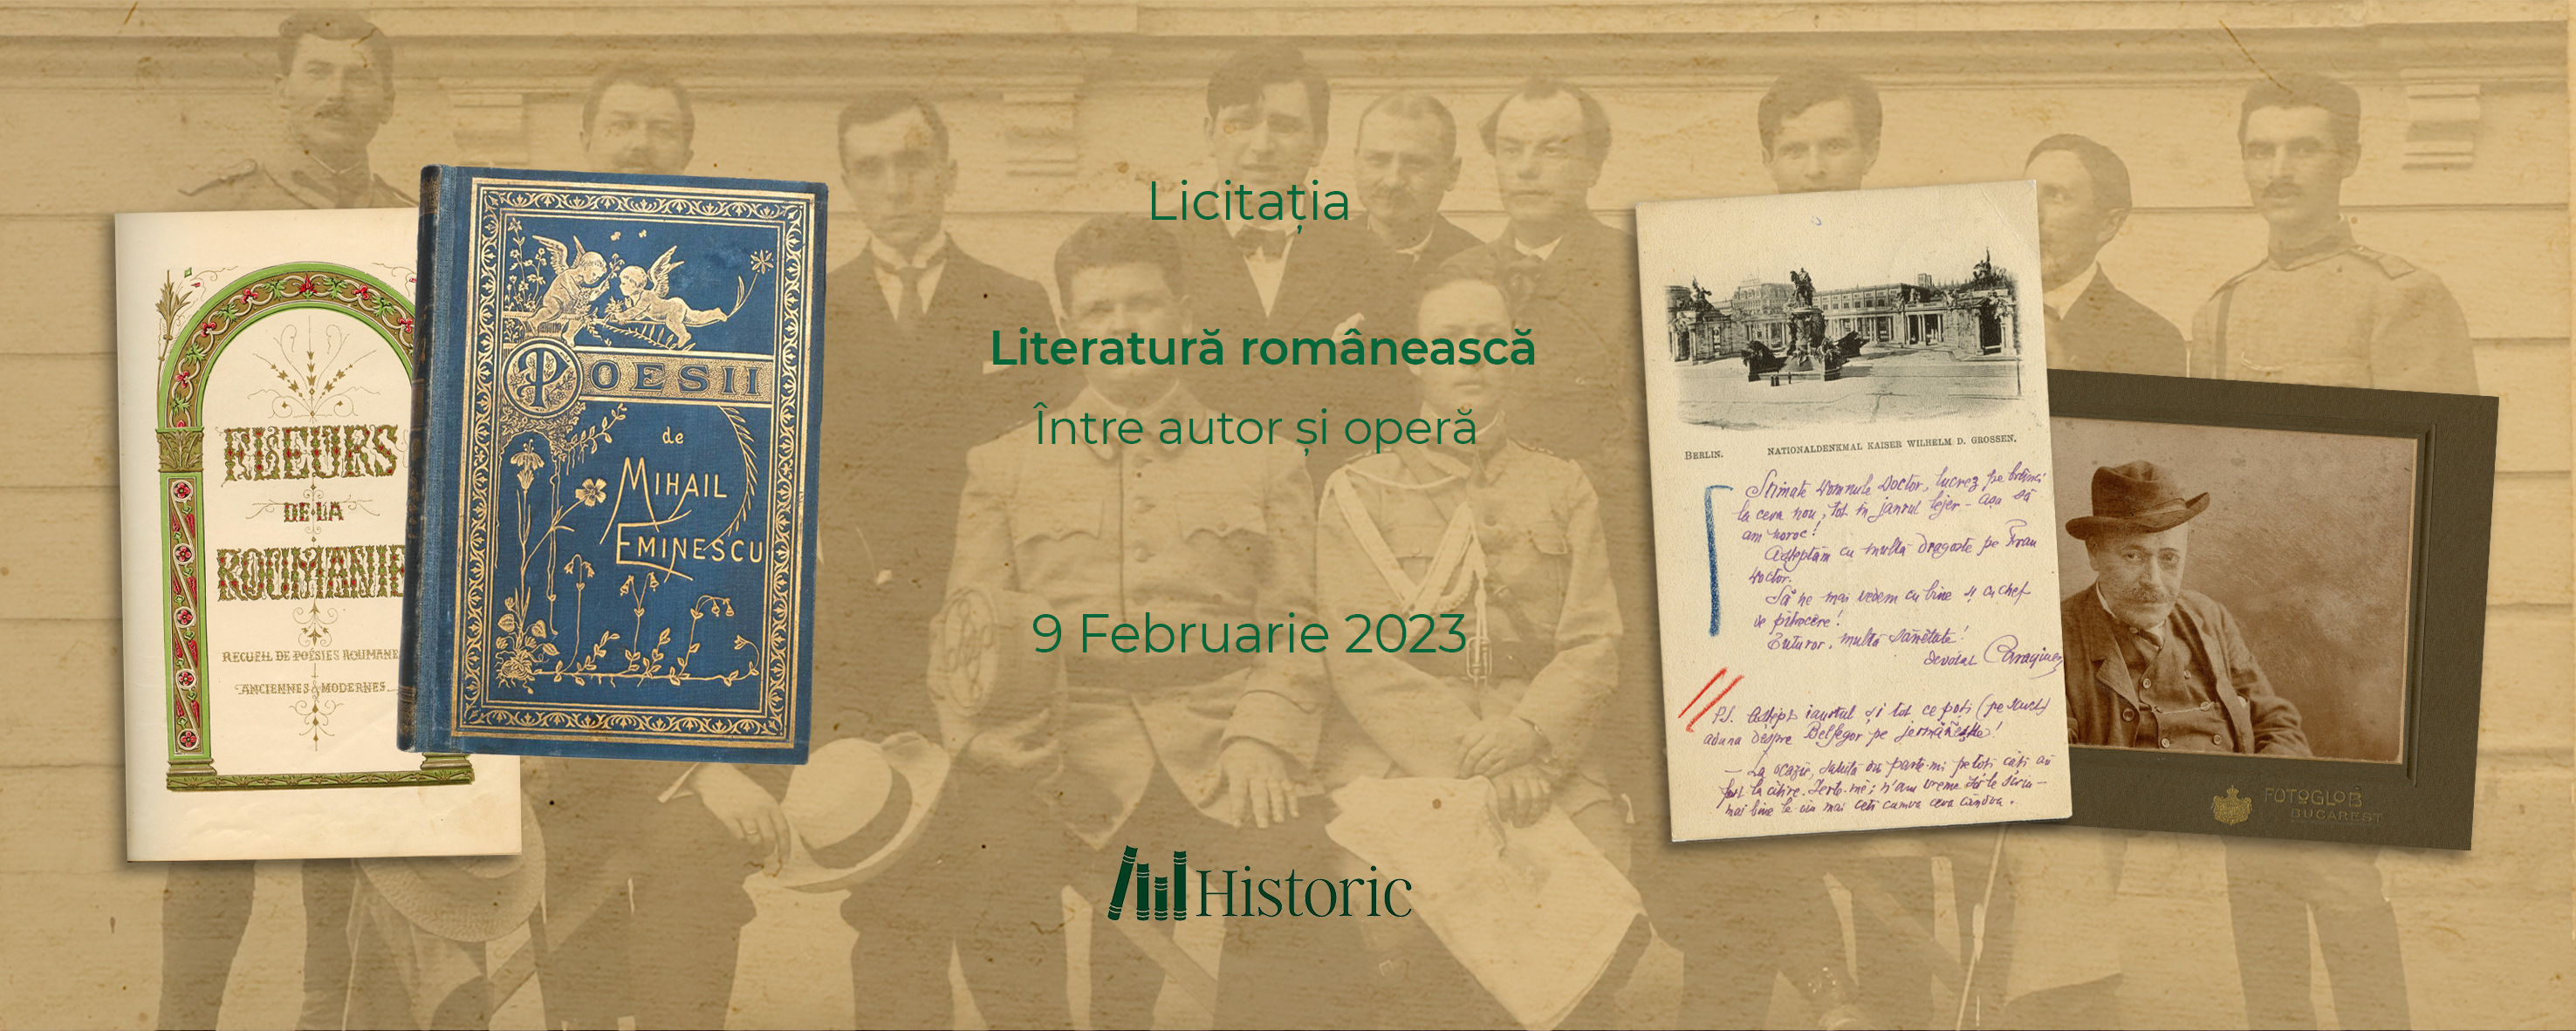 Licitația Literatura românească - Între autor și operă